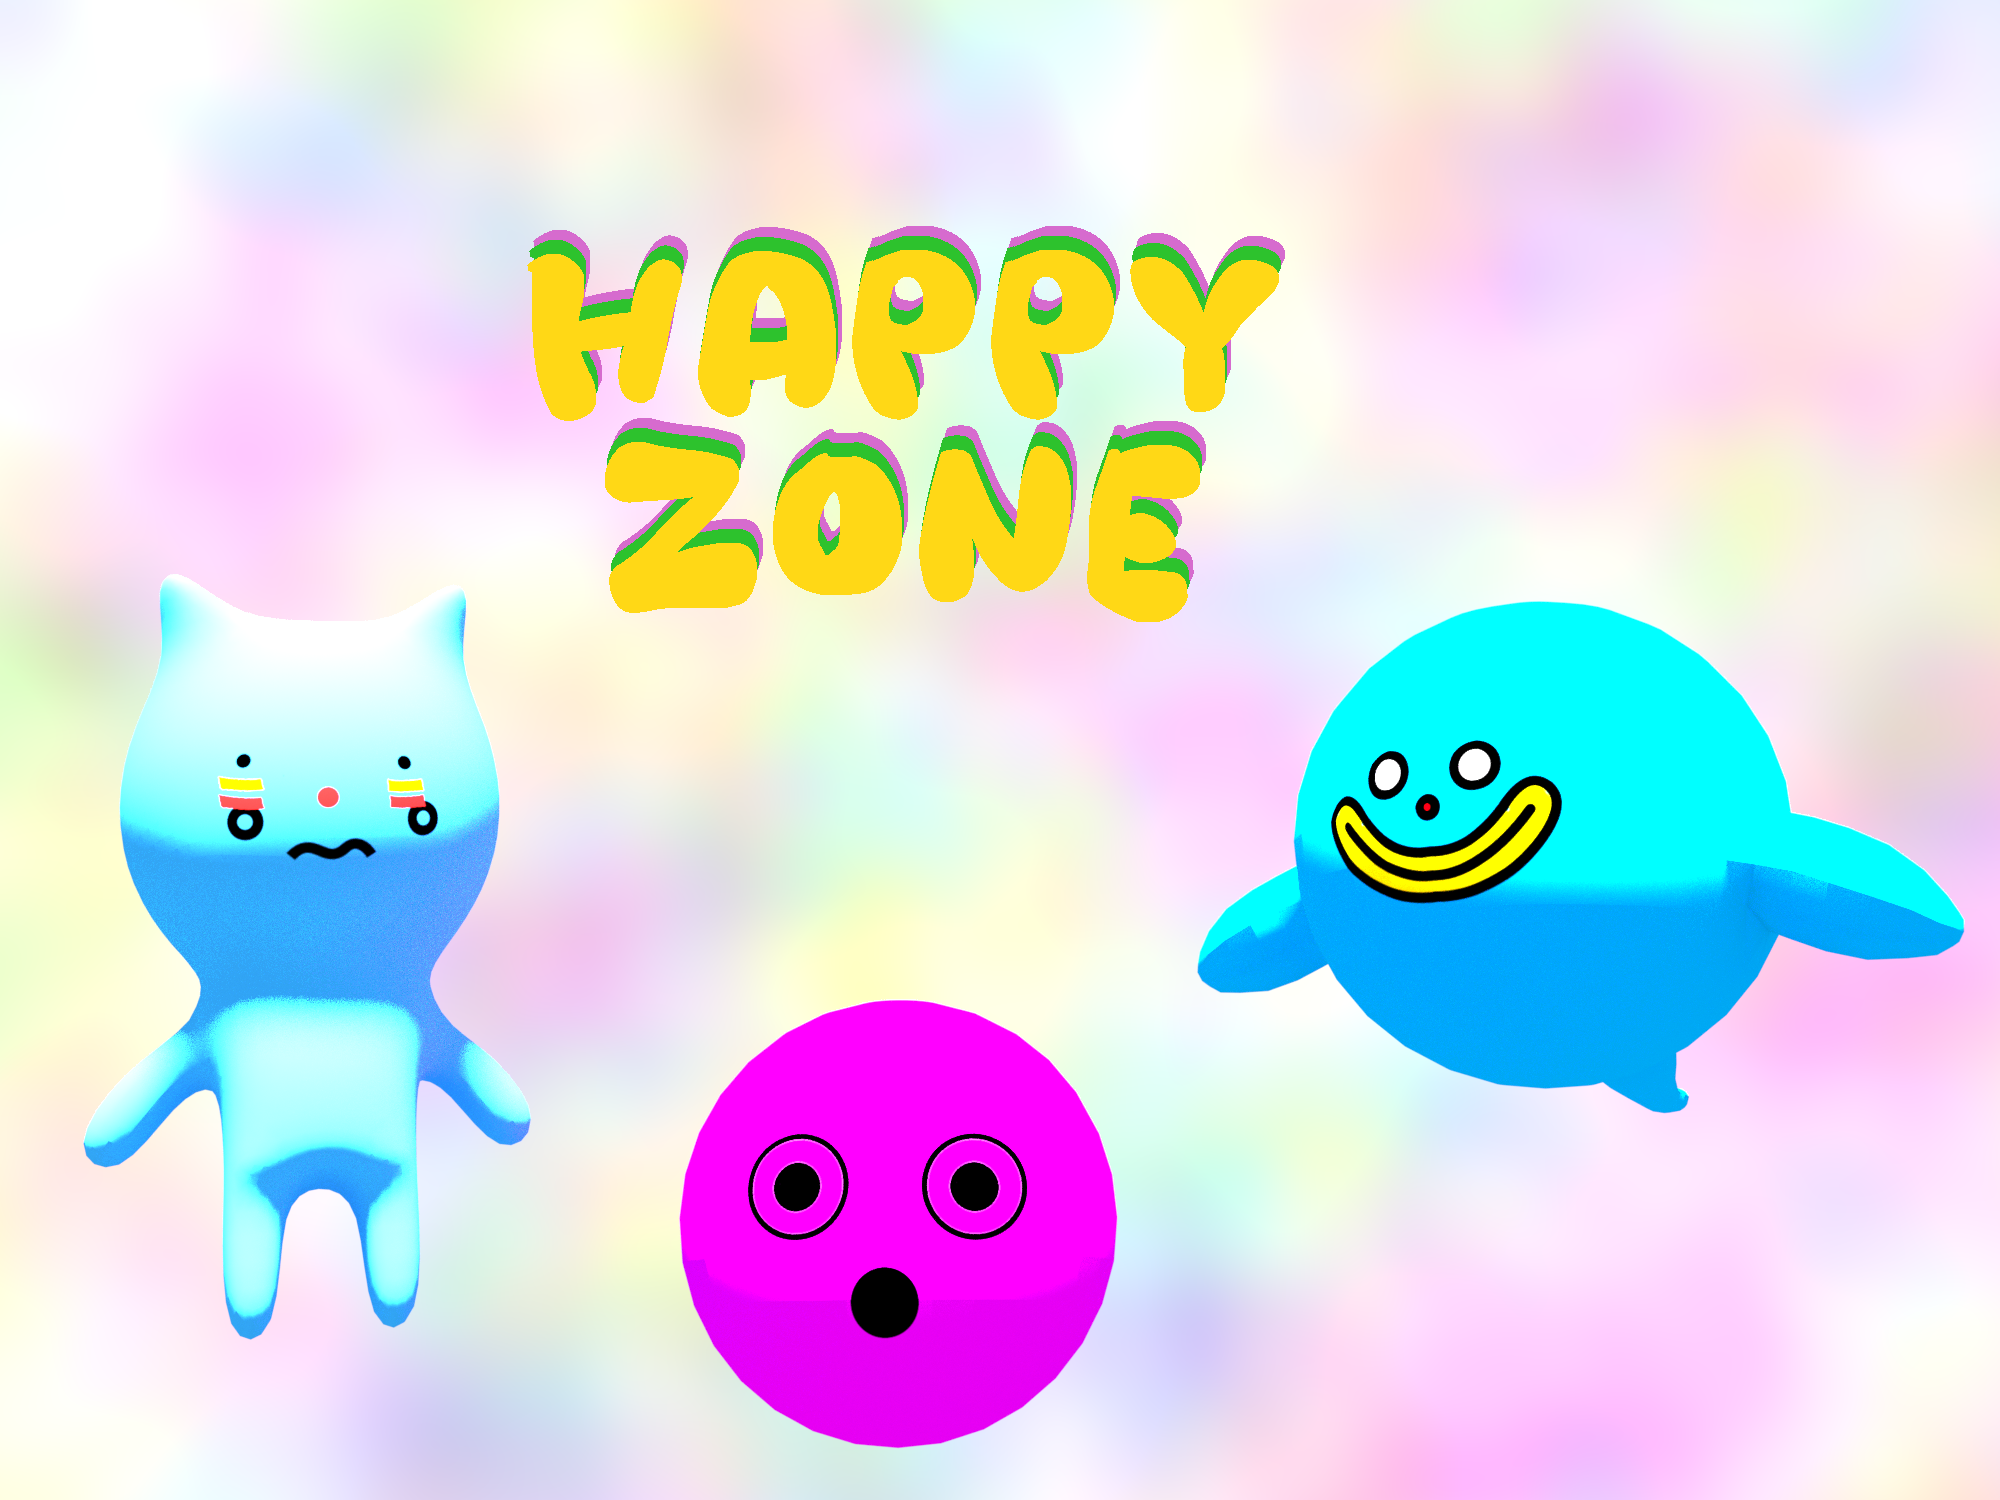 HAPPY ZONE by JMAS